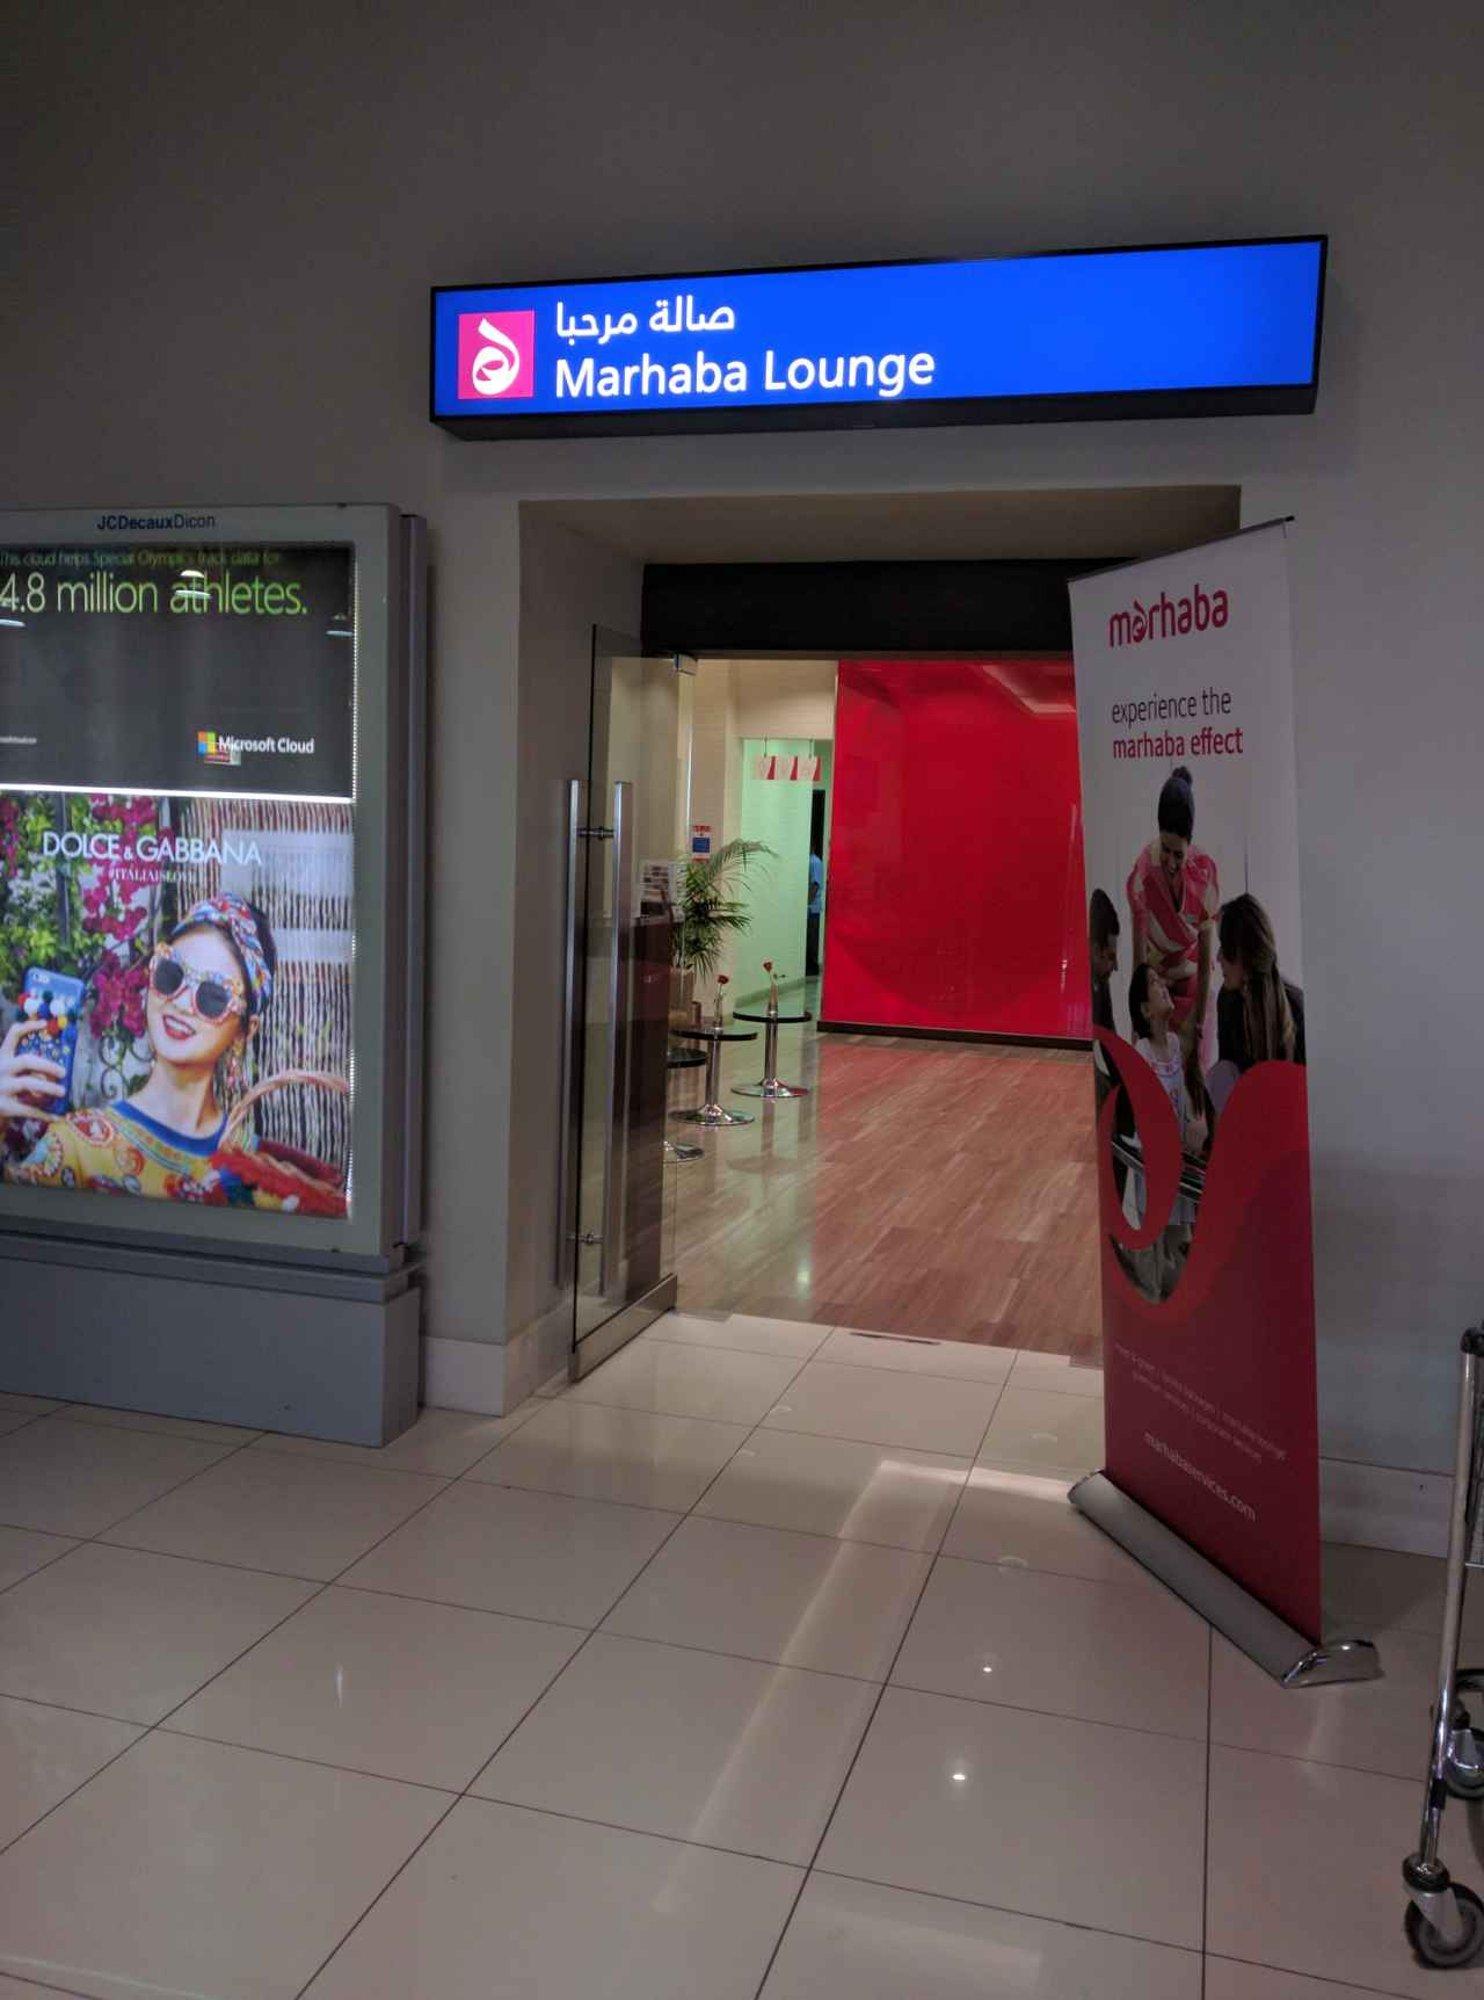 Marhaba Lounge image 13 of 26